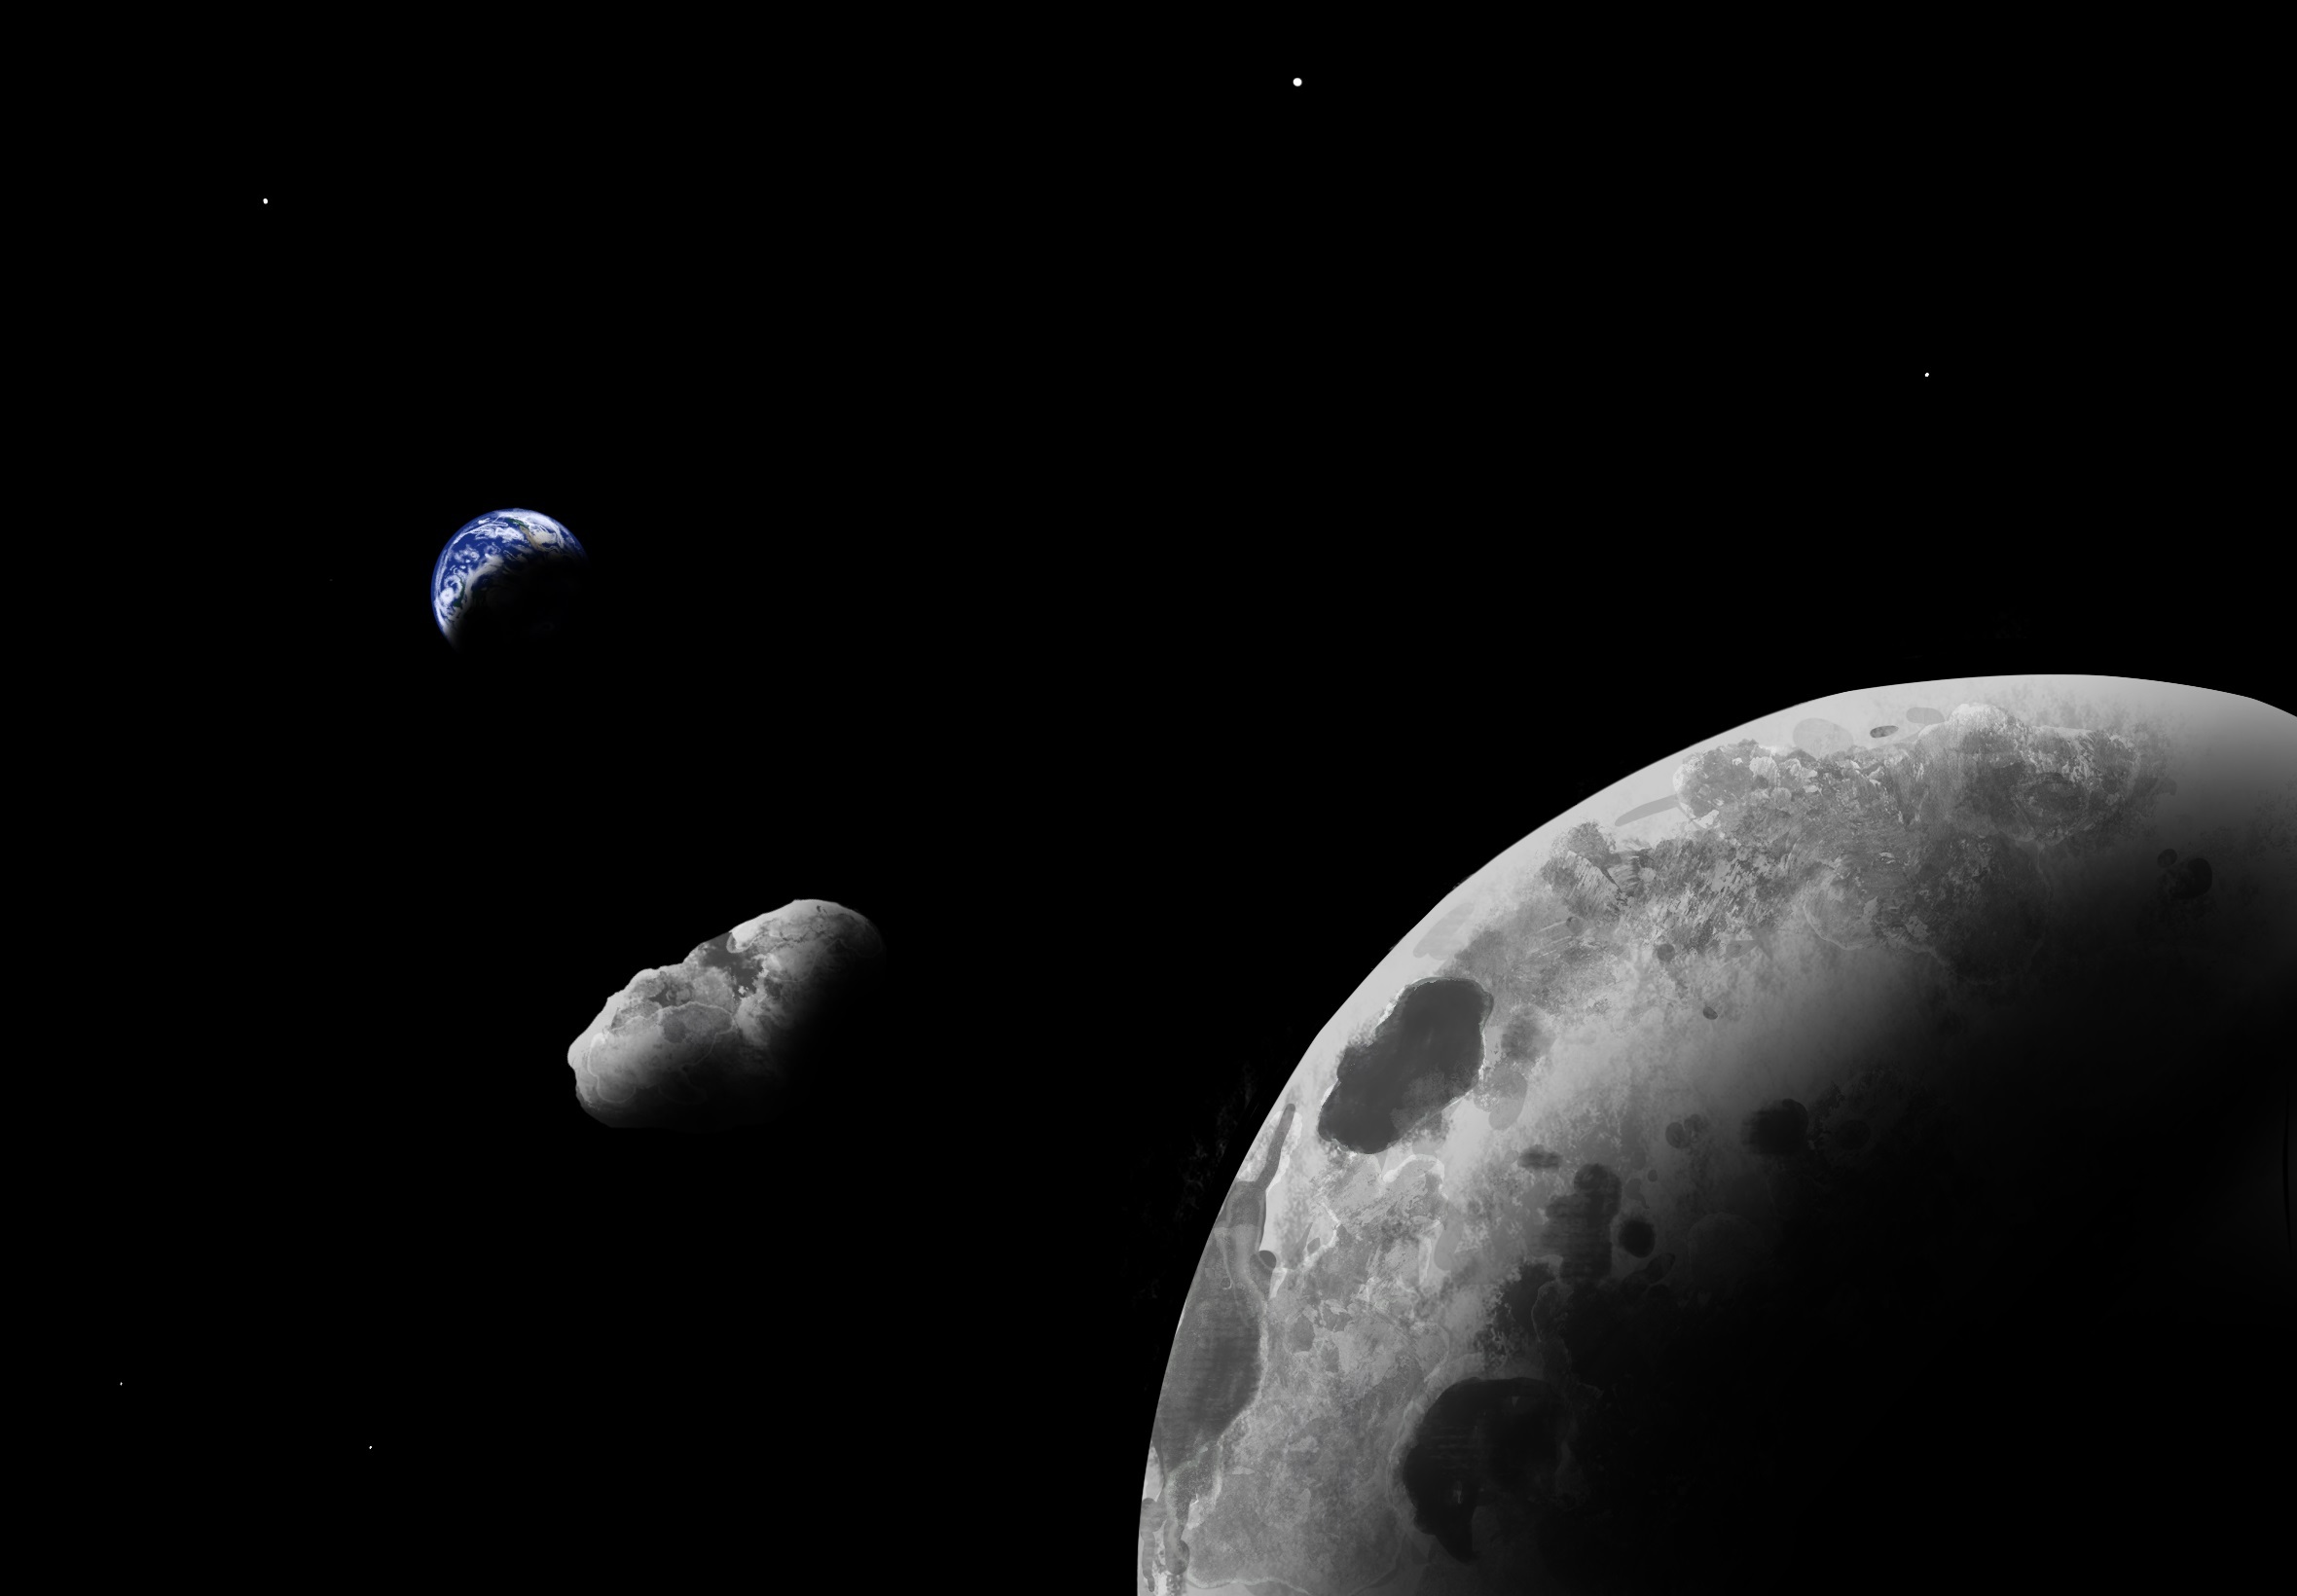 El asteroide pasará a una distancia de aproximadamente 2 millones de kilómetros (ADDY GRAHAM/UNIVERSITY OF ARIZONA)
